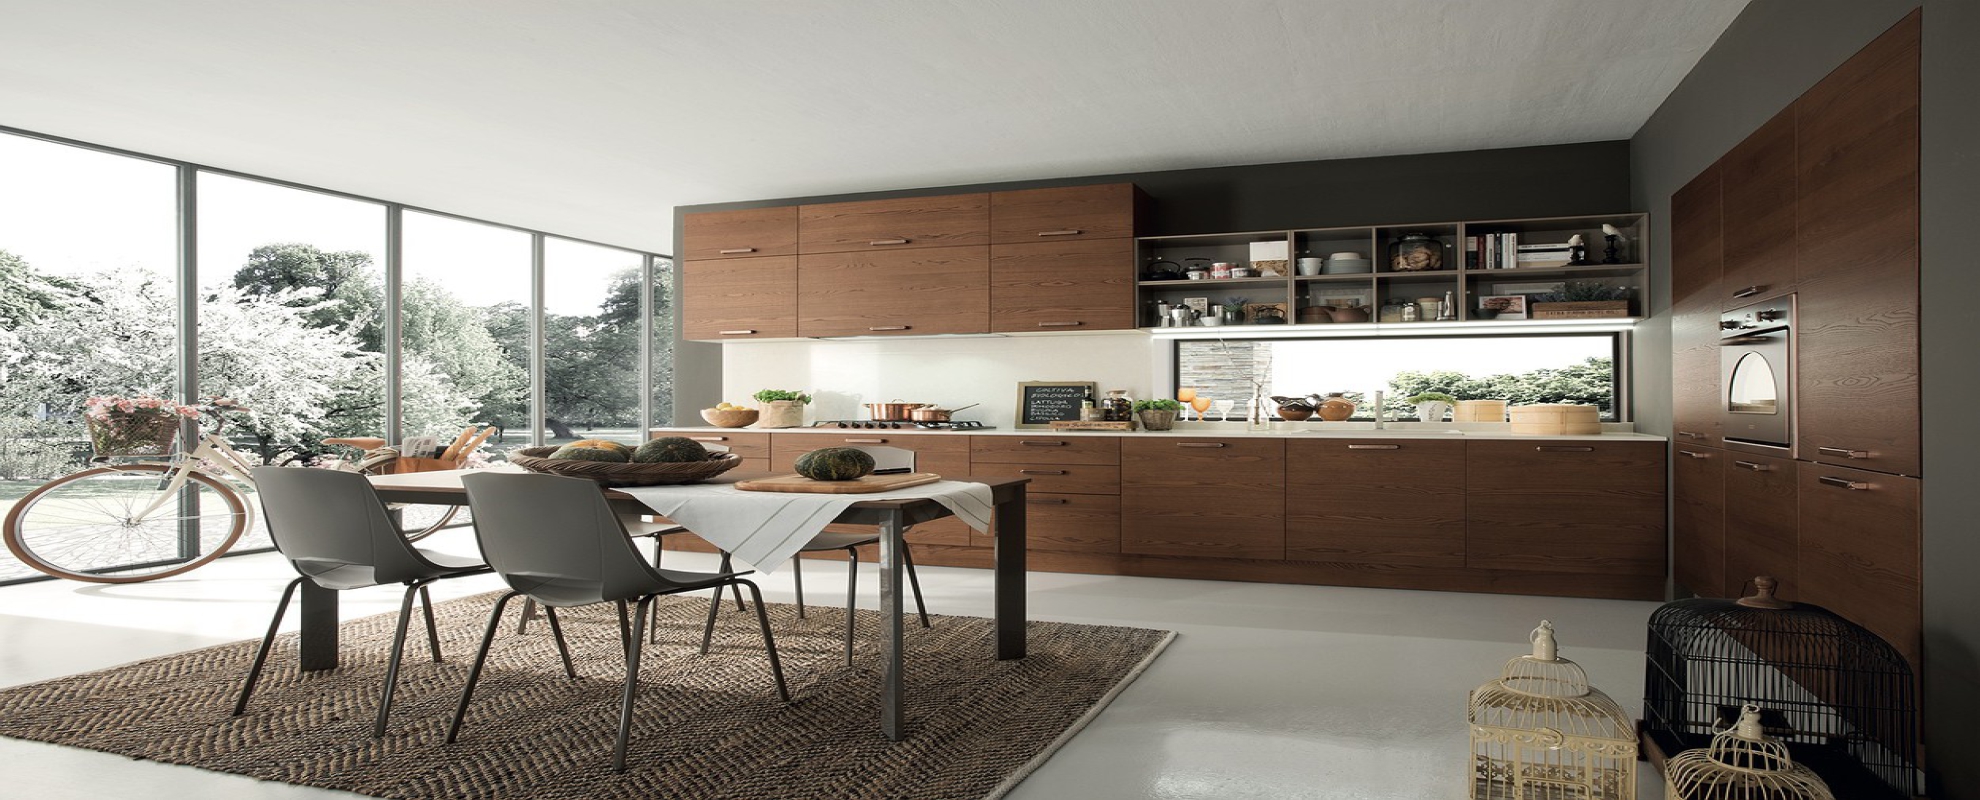 kitchen, design